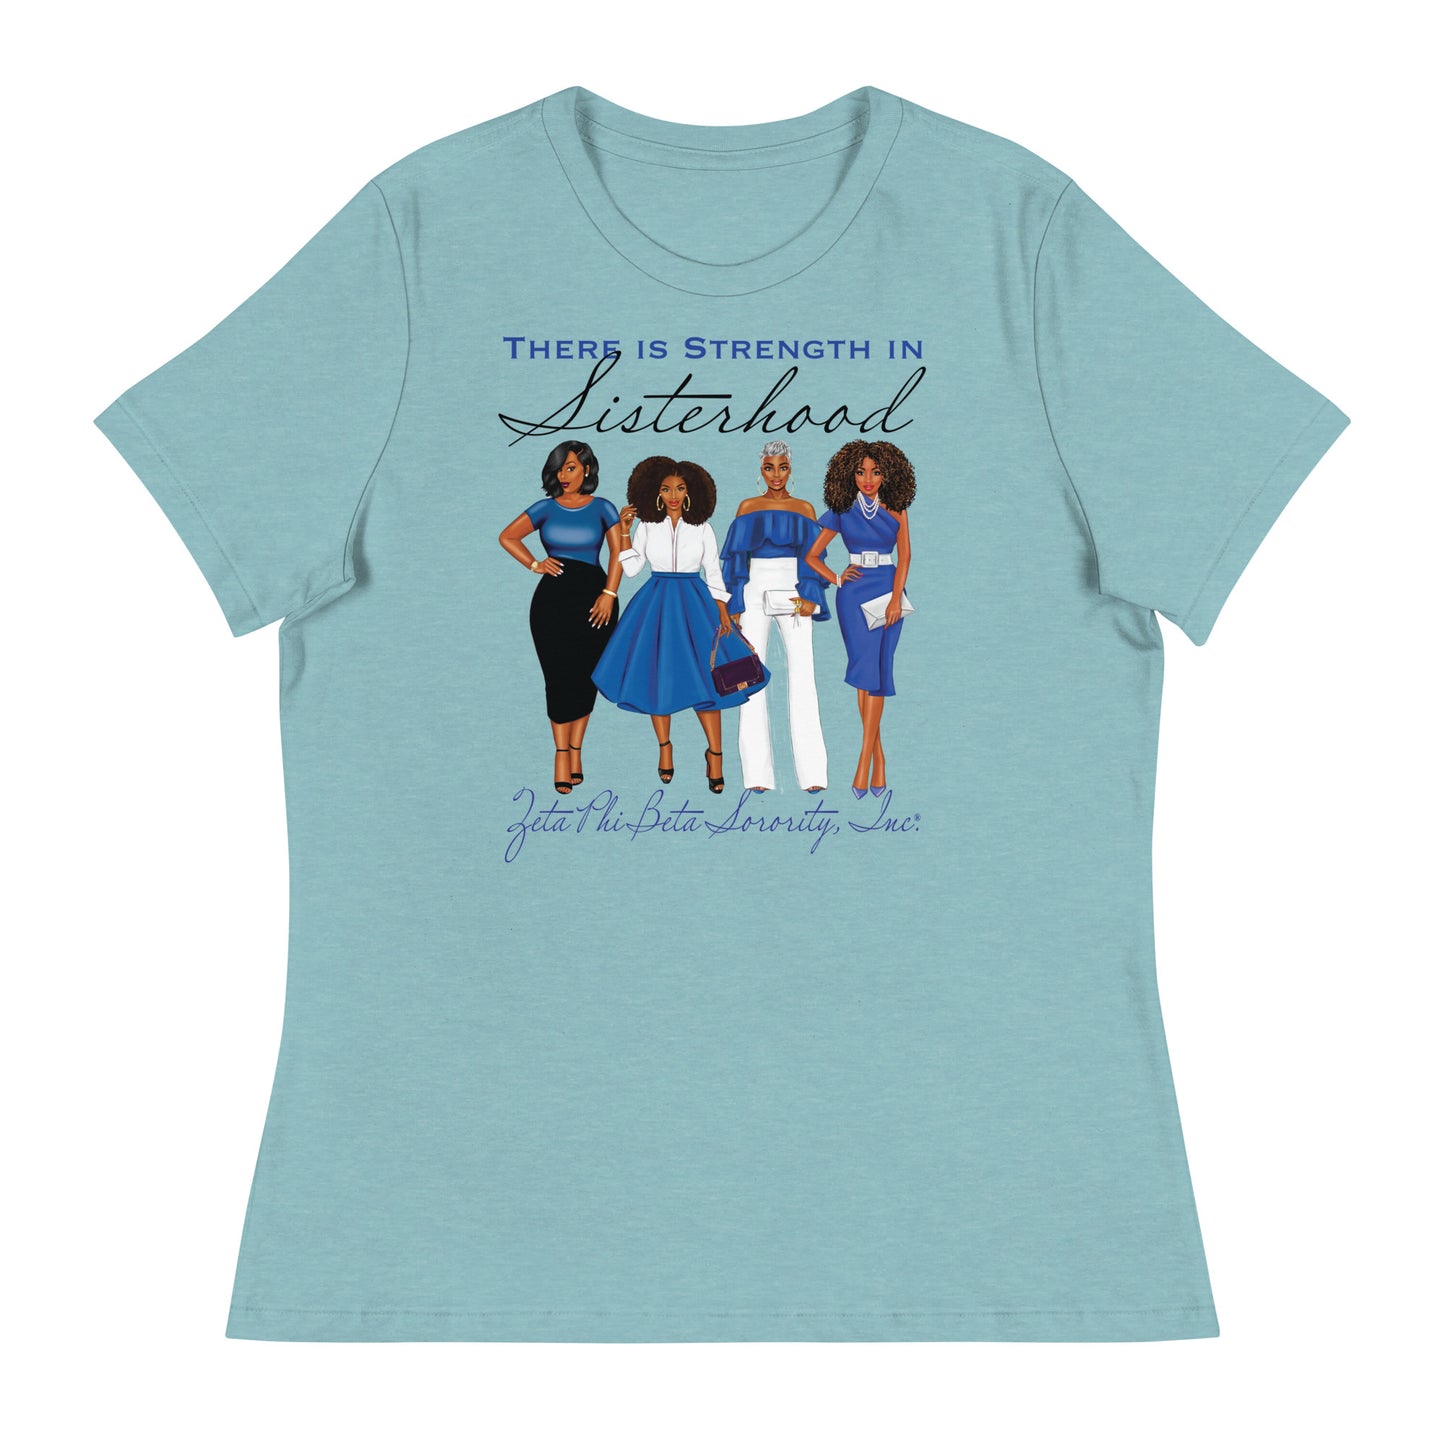 Zeta Phi Beta Strength in Sisterhood T-Shirt